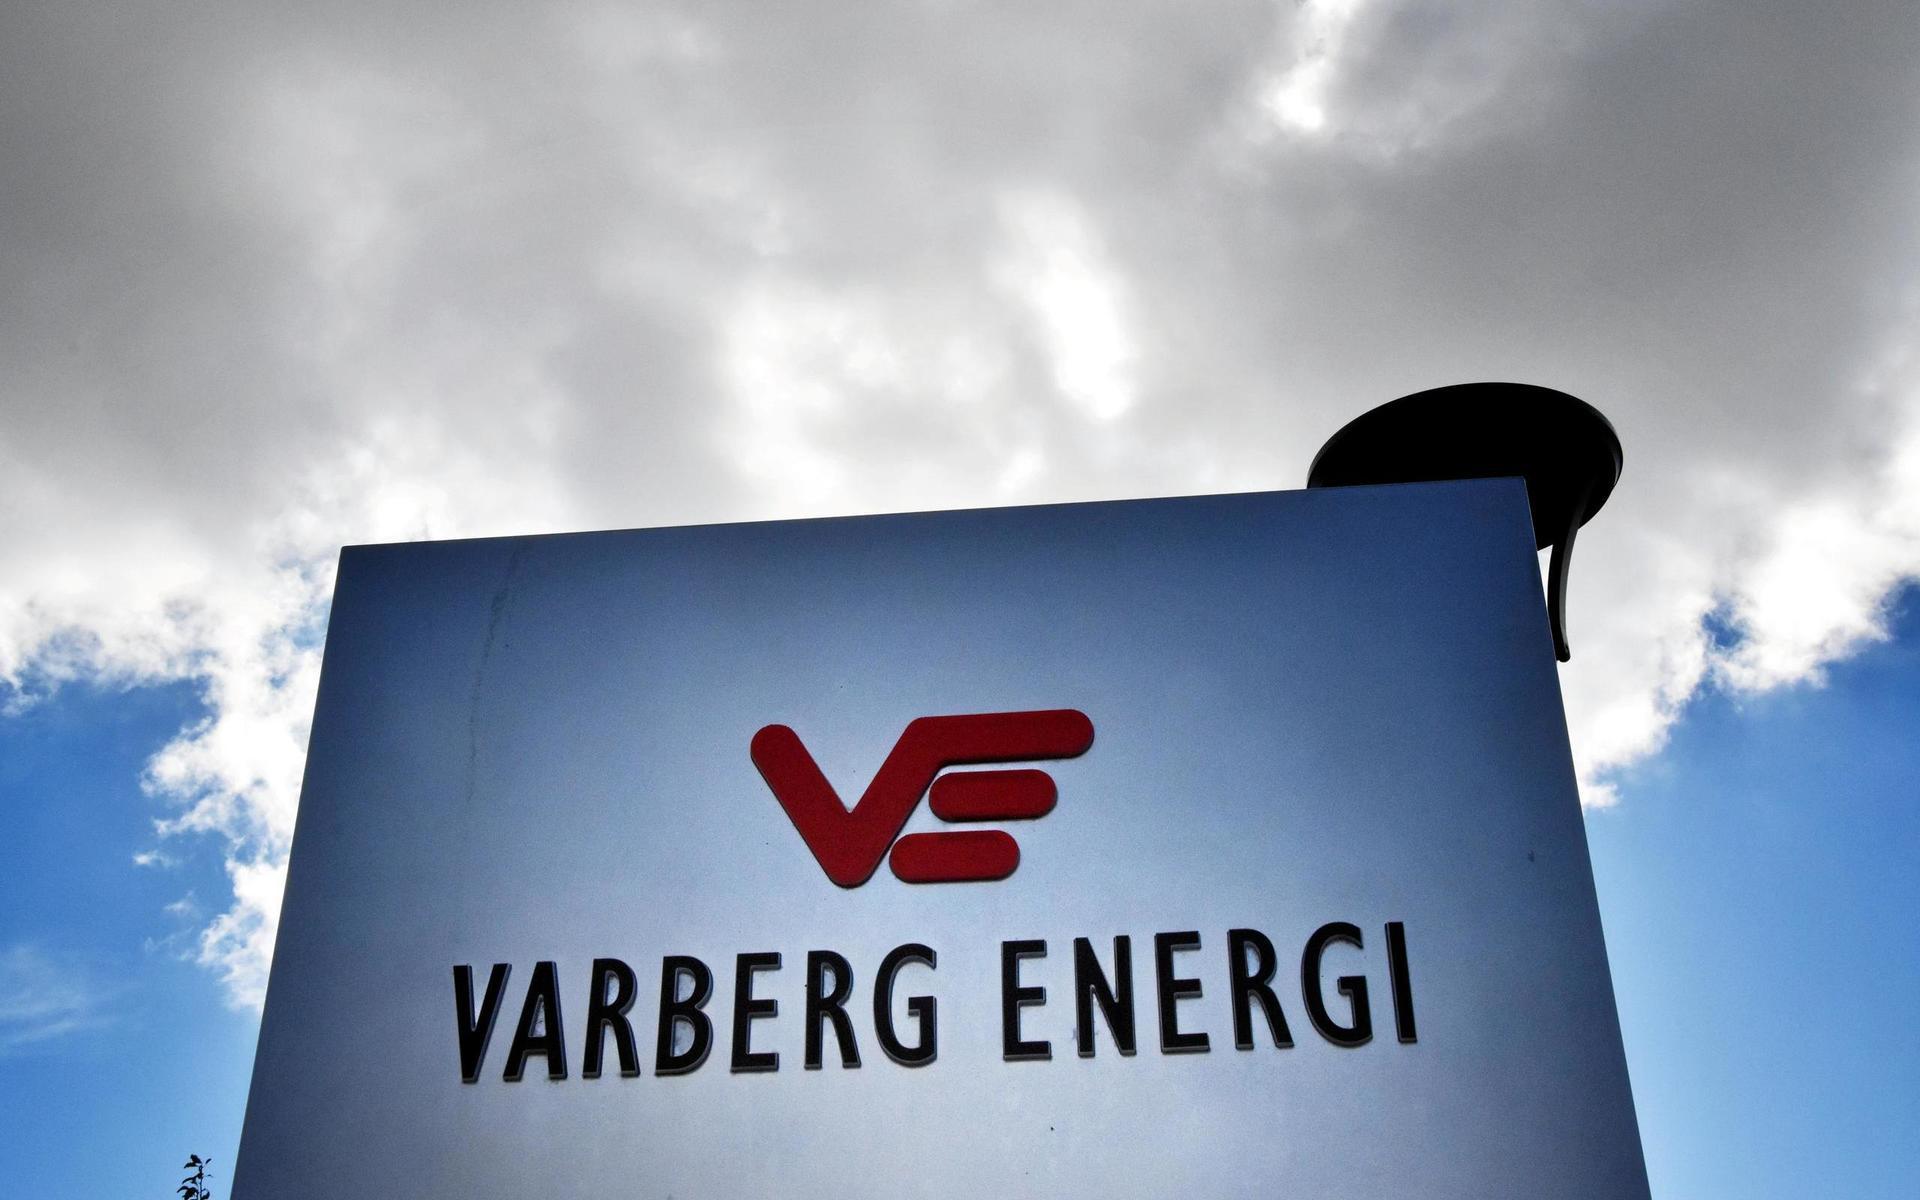 HN granskade i en rad artiklar det kommunala energibolaget Varberg Energi.